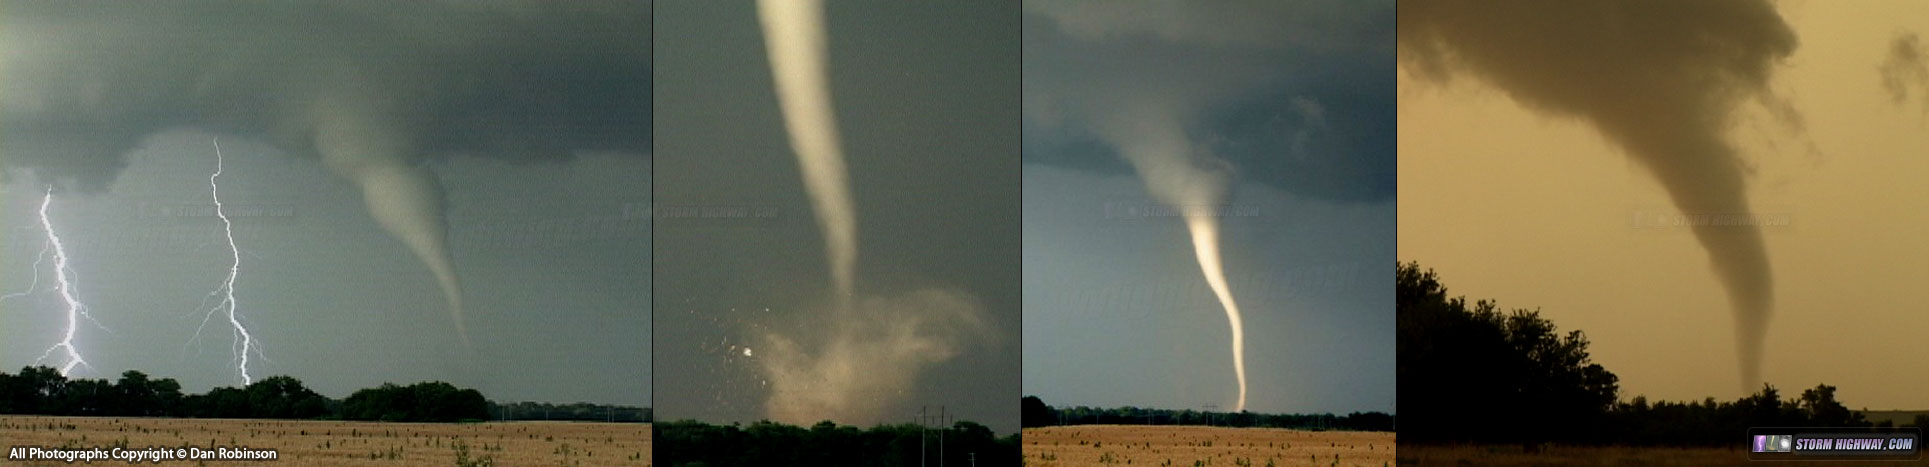 Tornadoes at Mulvane and Rock, Kansas on June 12, 2004